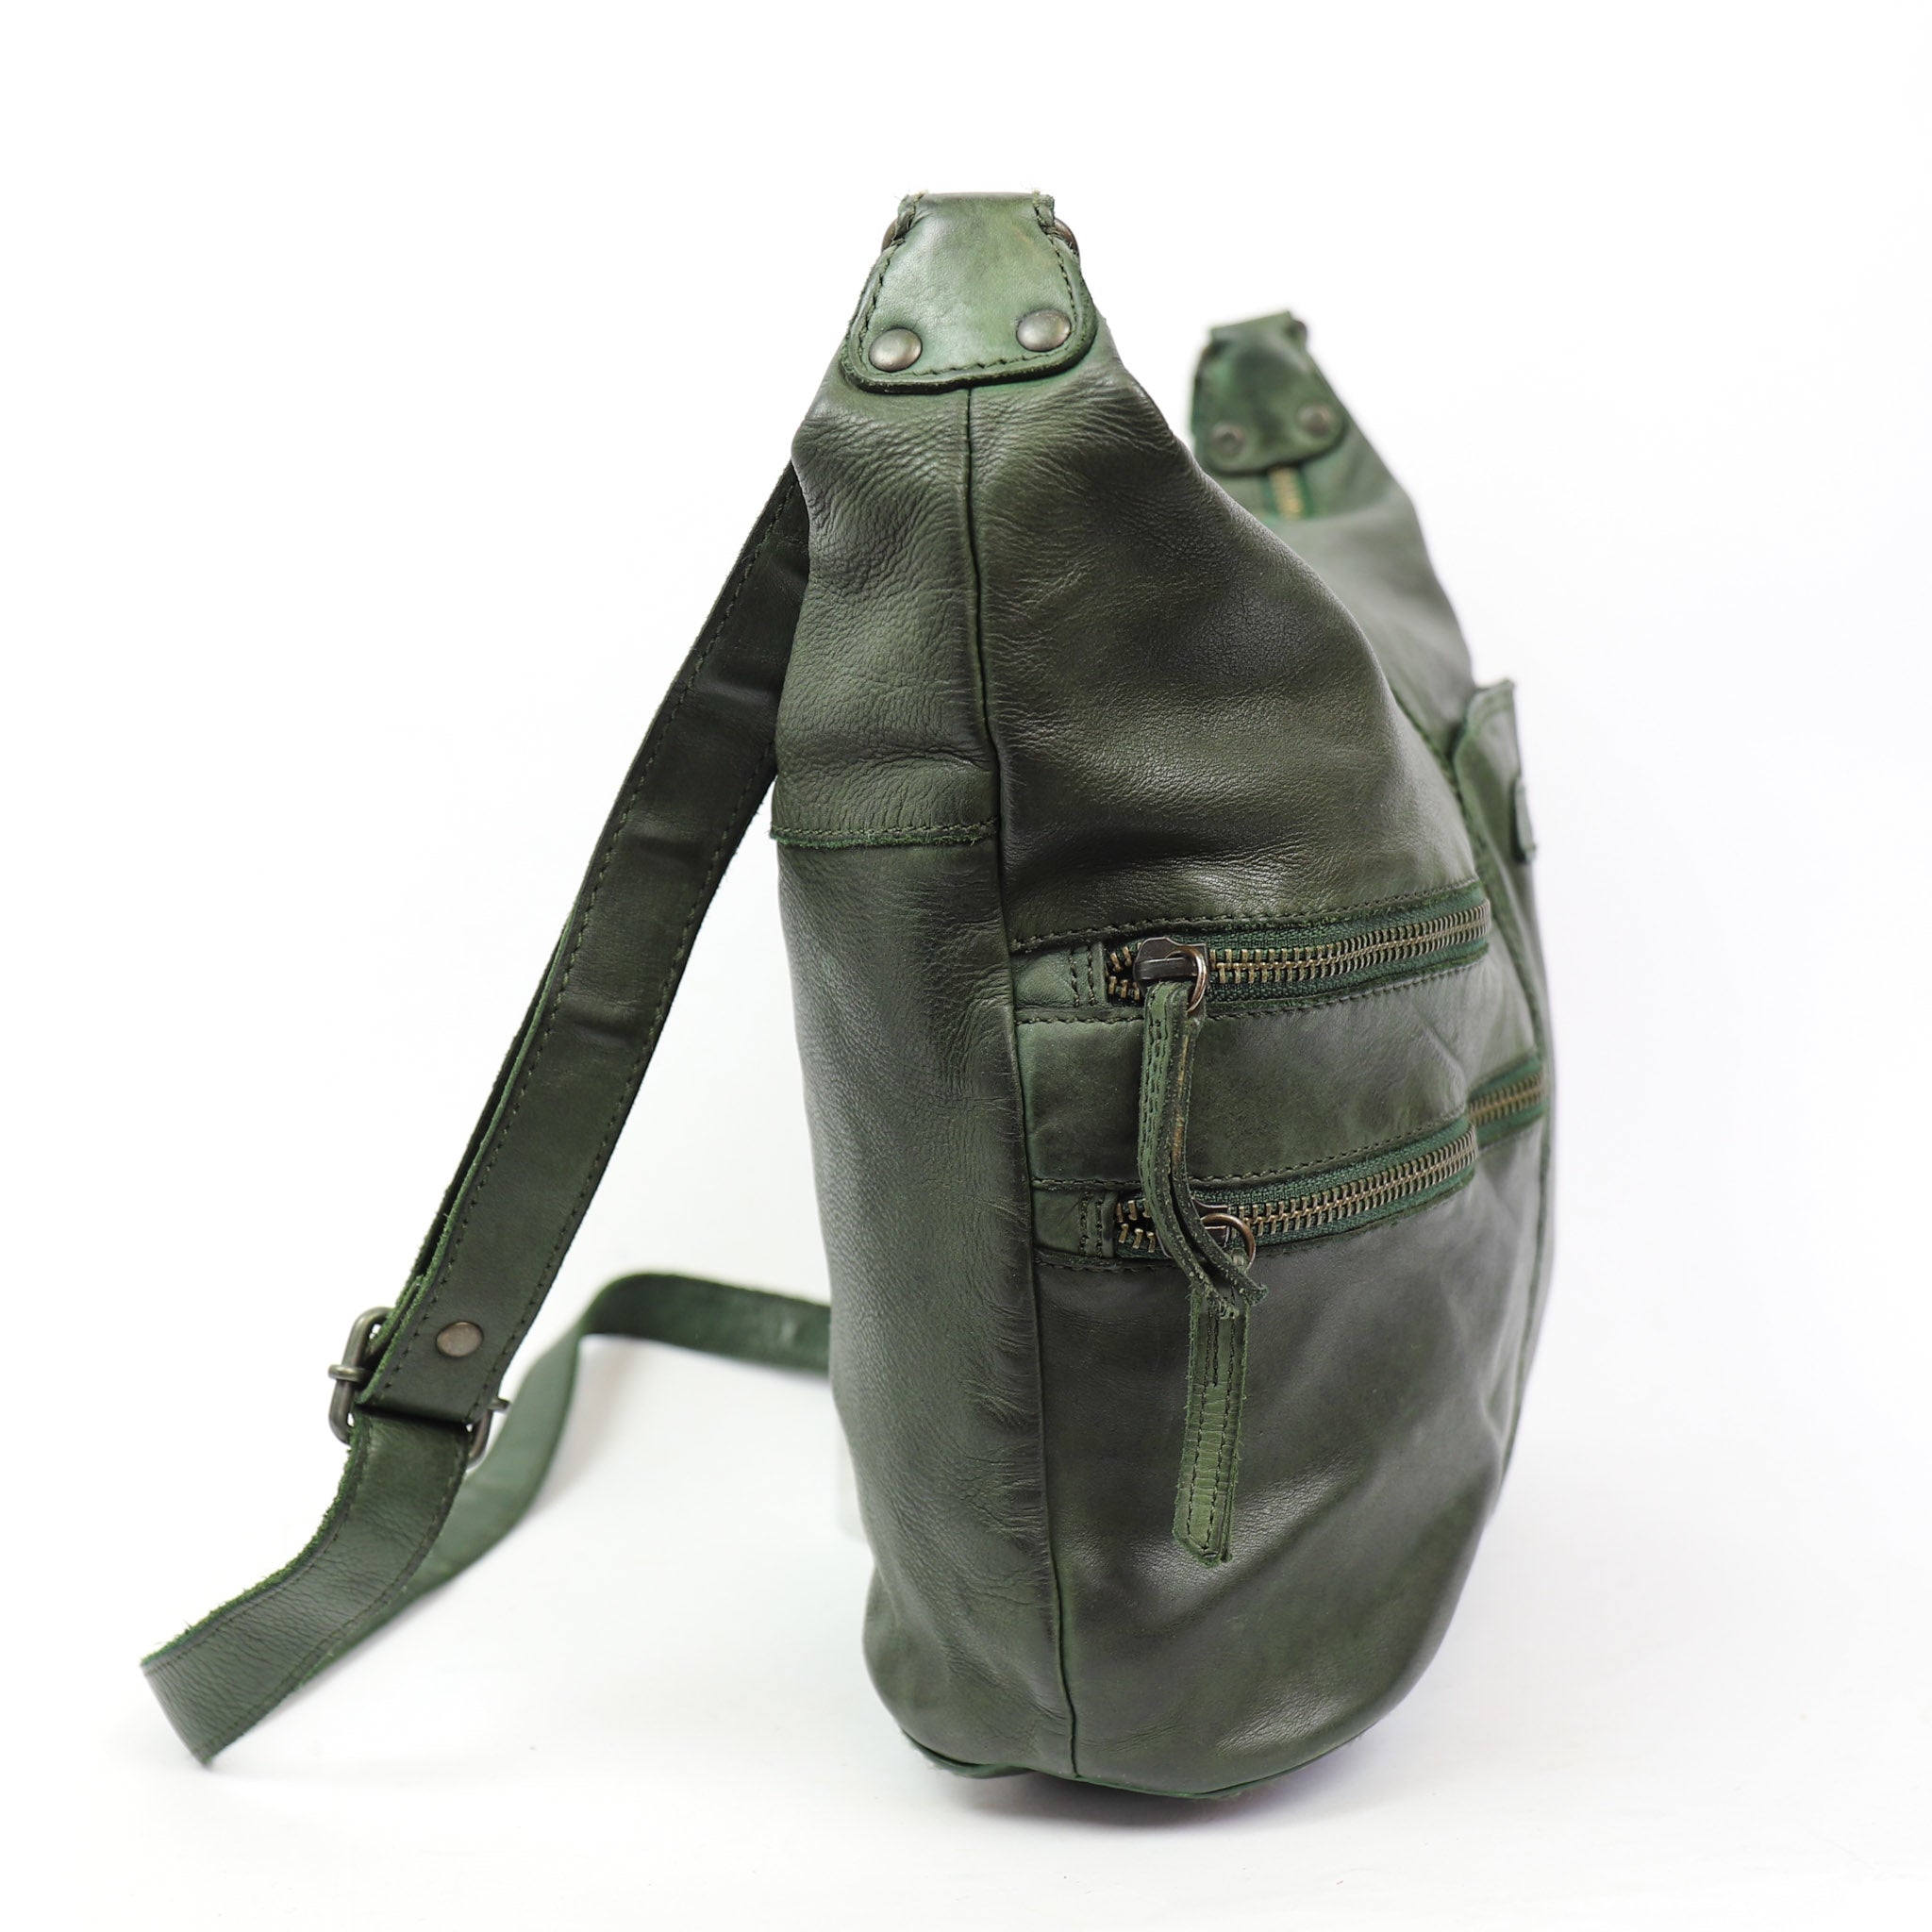 Shoulder bag 'Frieda' green - CL 40498